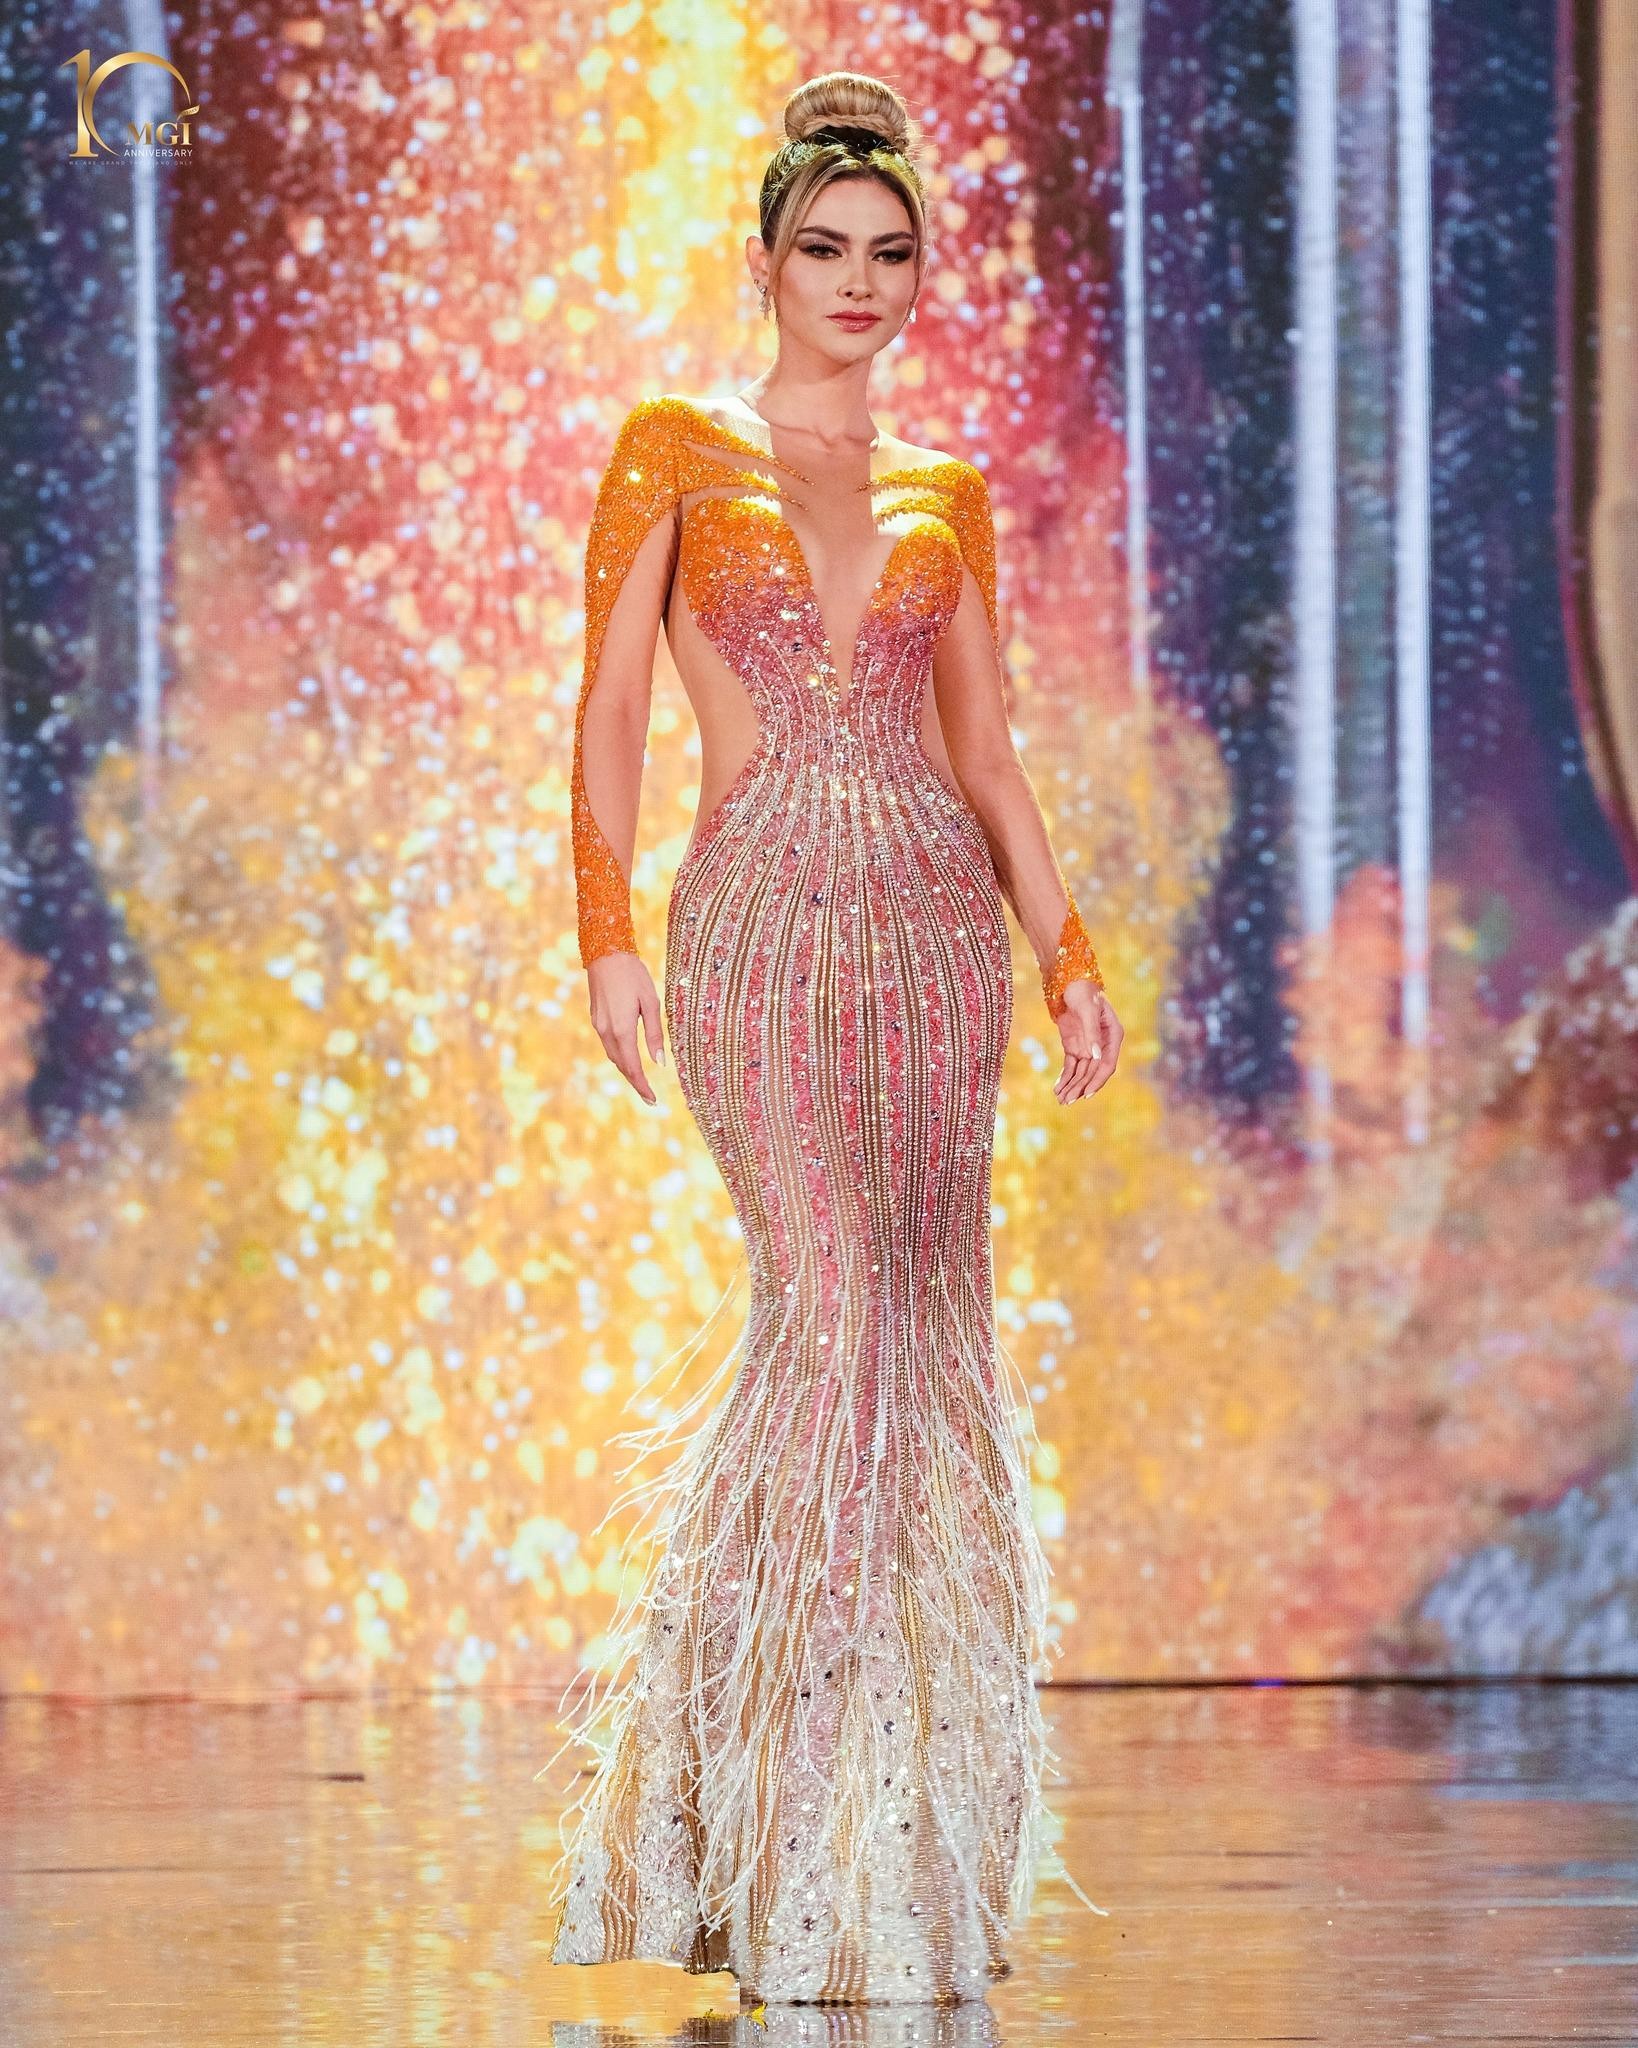 Váy dạ hội gợi cảm ở bán kết Hoa hậu Hòa bình - Ảnh 12.